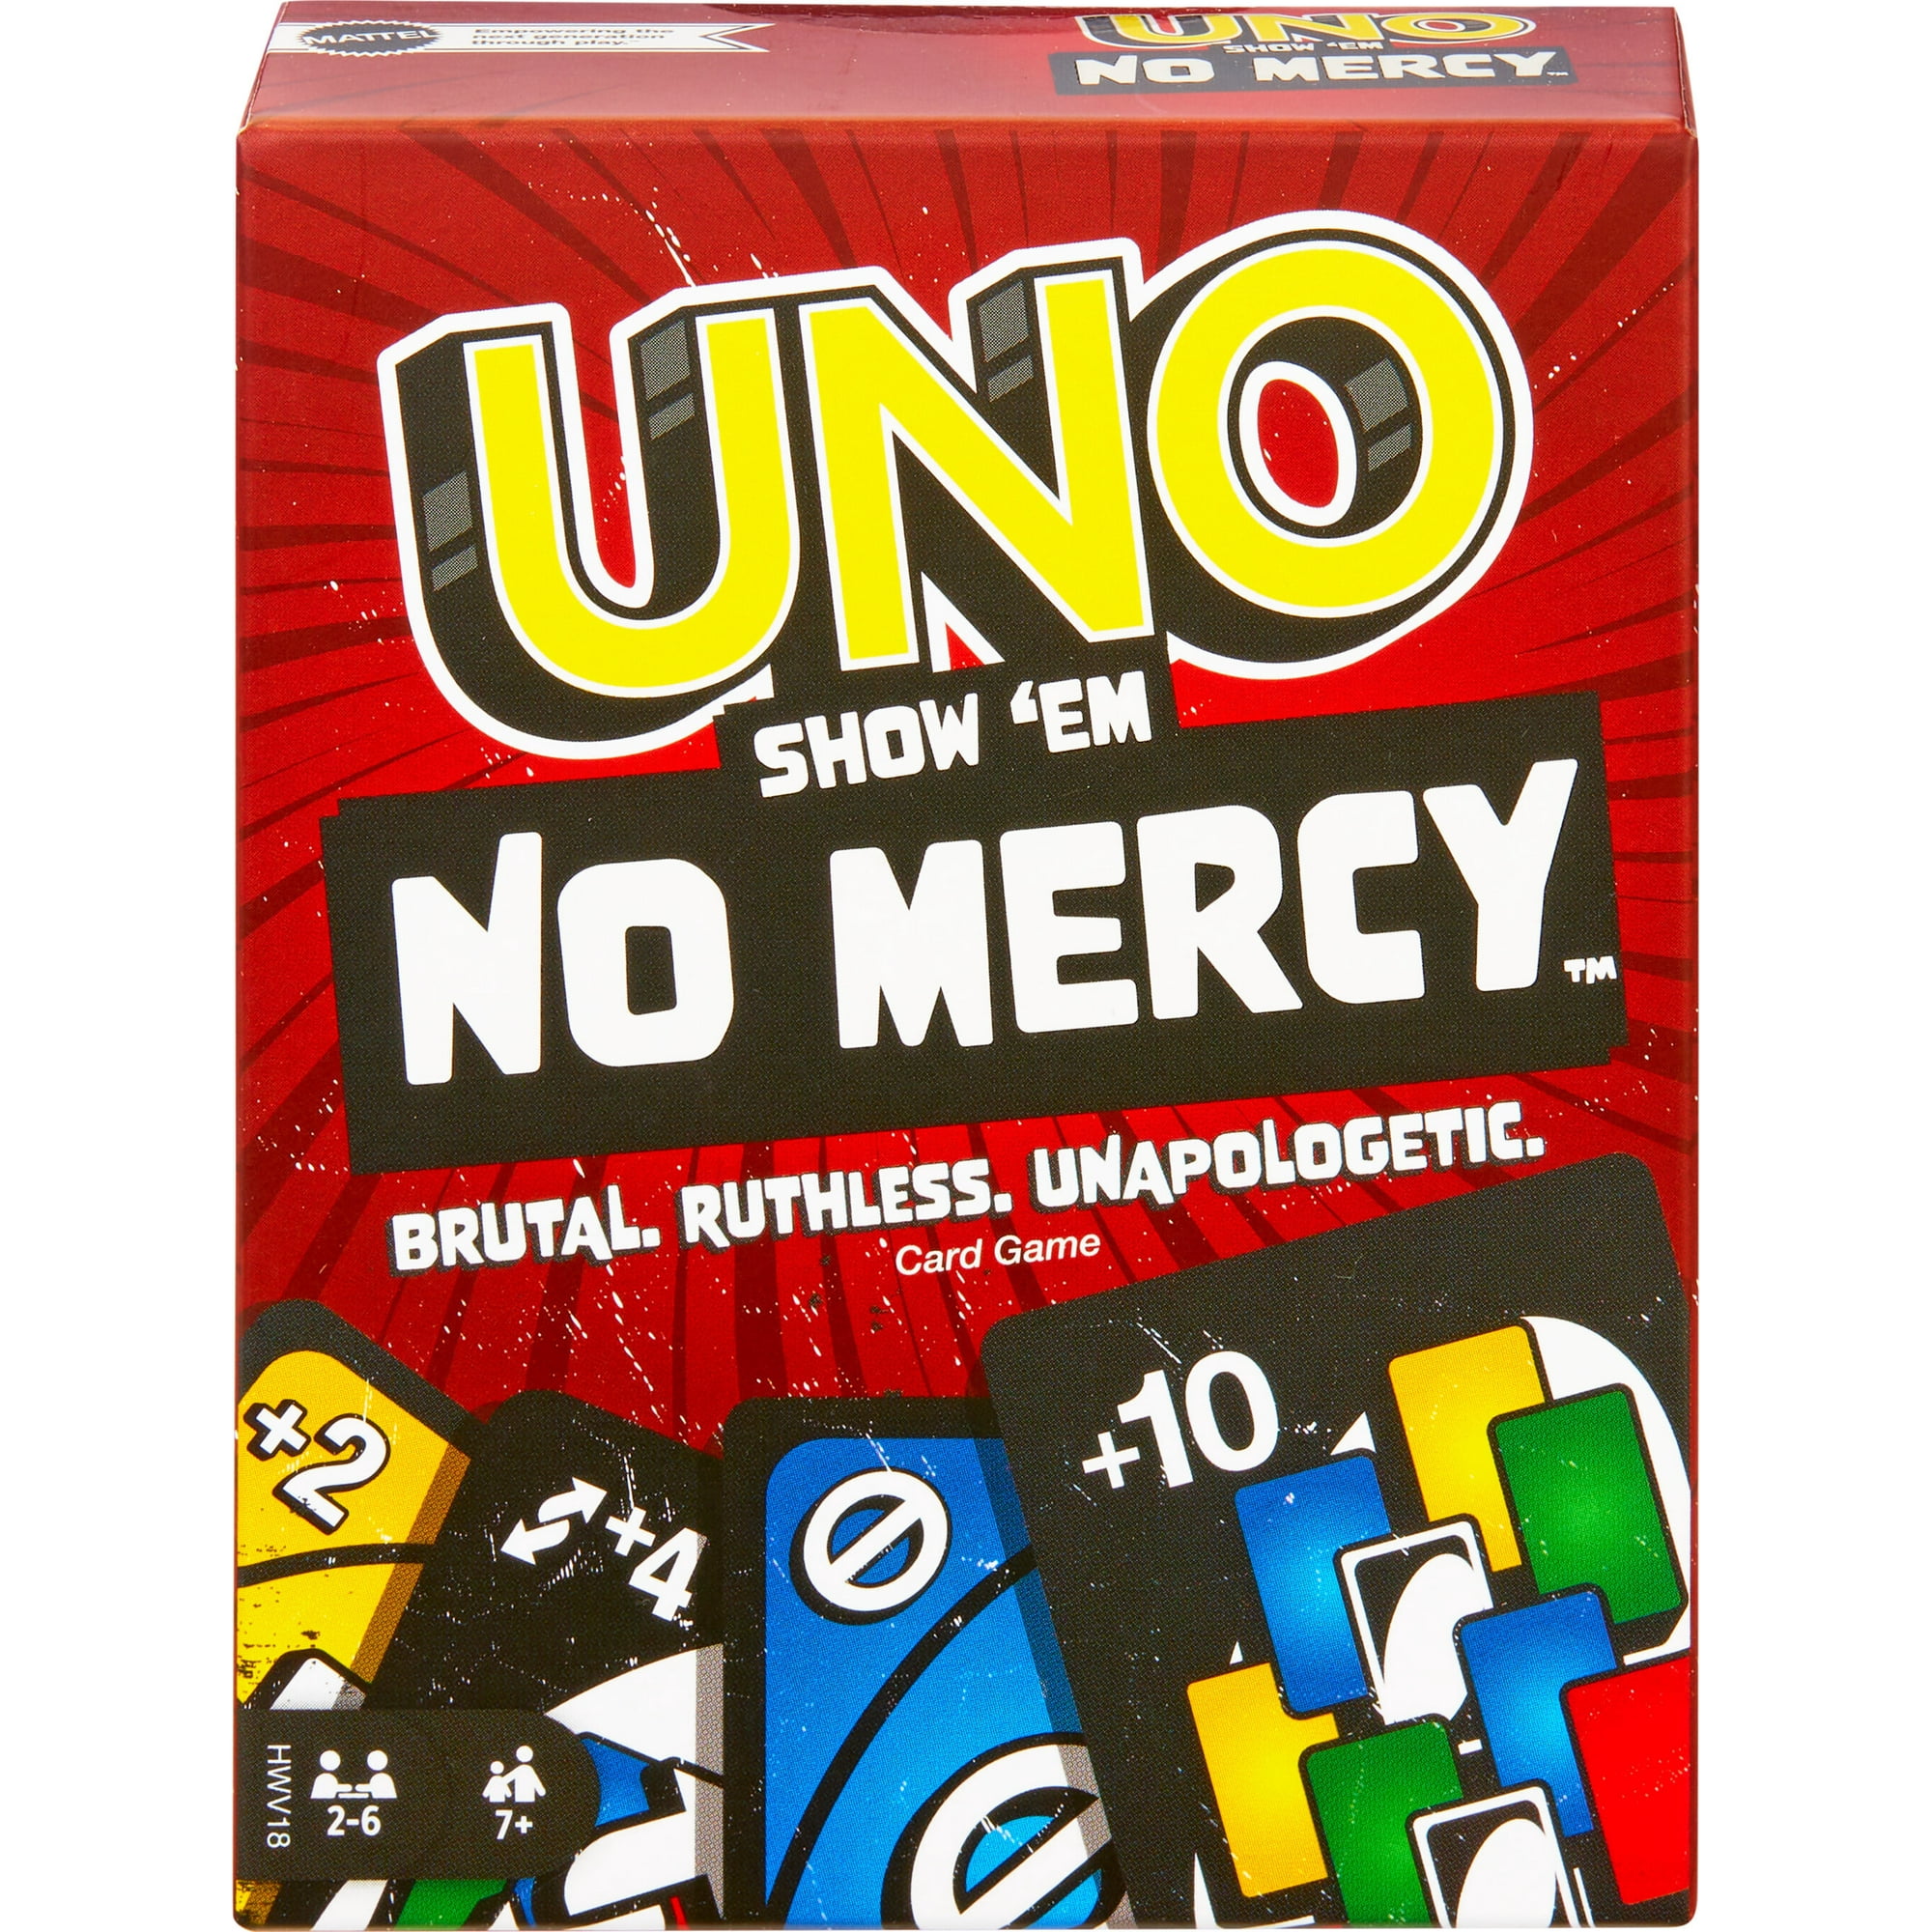 Uno no mercy? They did the most here #uno #unonomercy #games #relatab, uno  no mercy